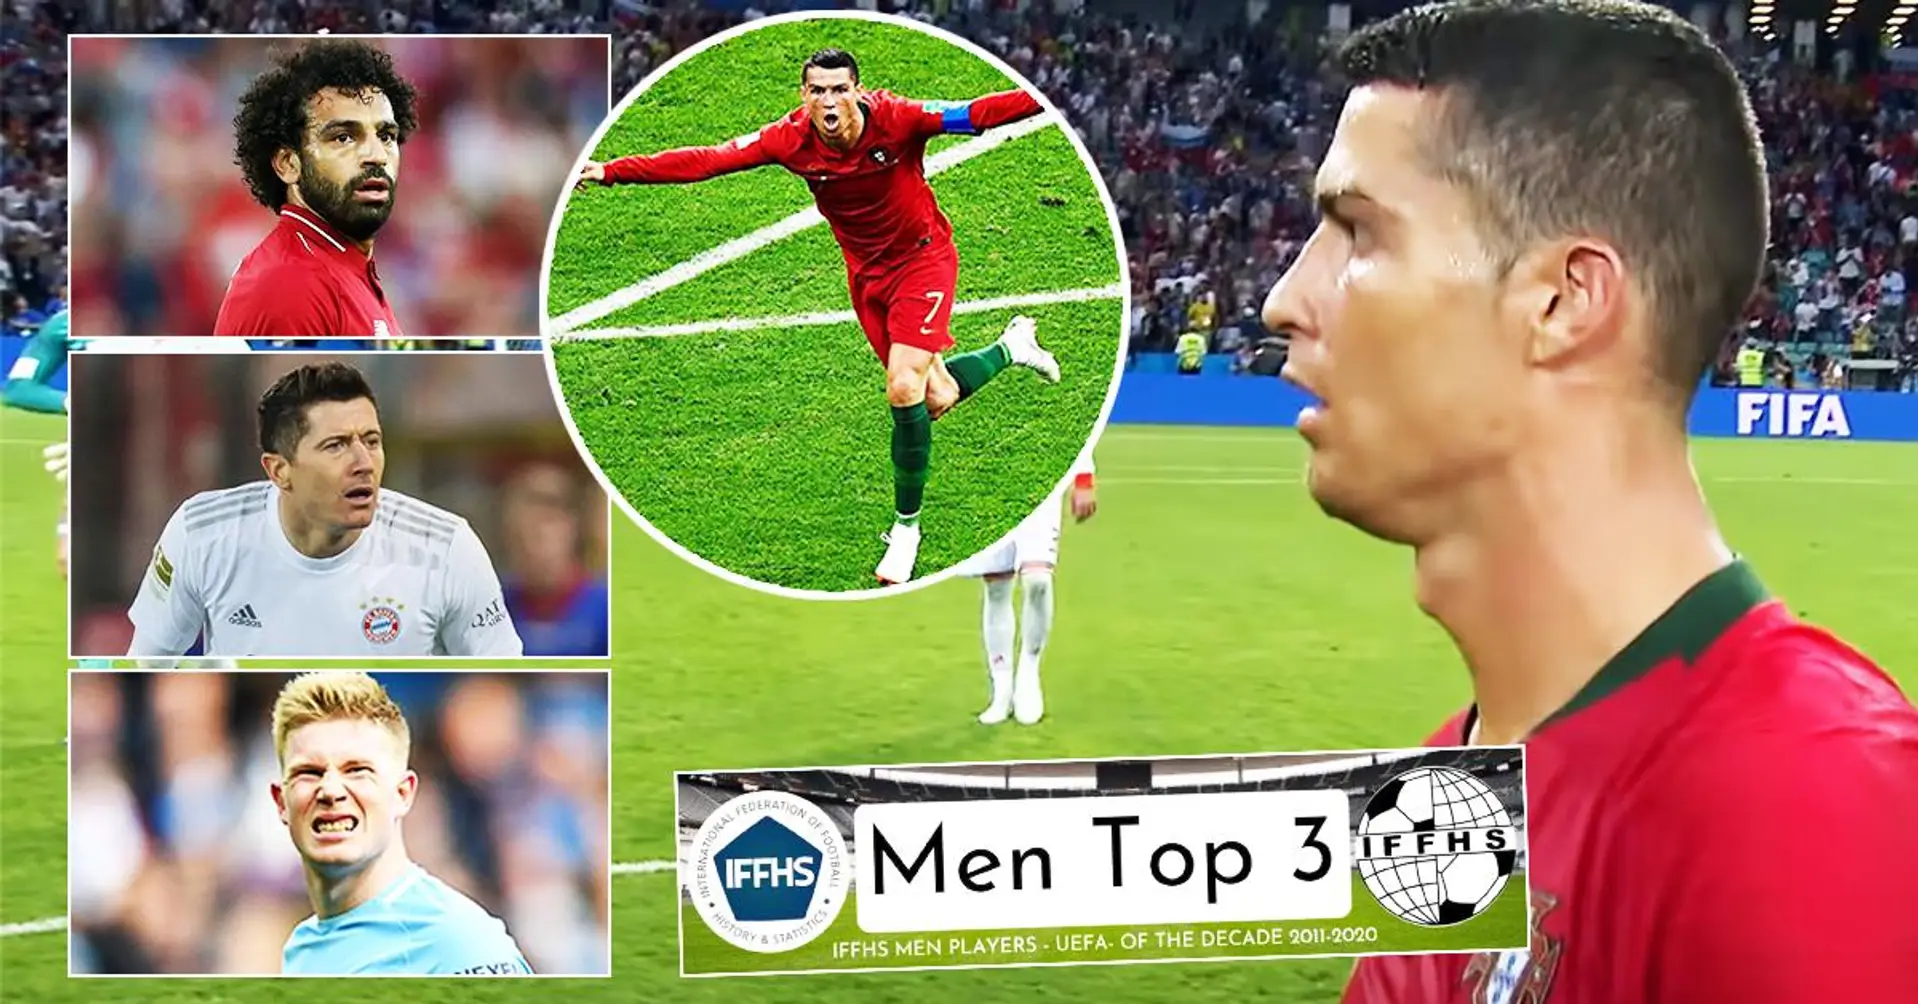 Cristiano Ronaldo zu Europas Spieler des Jahrzehnts gewählt, Lewandowski nicht einmal in Top 3